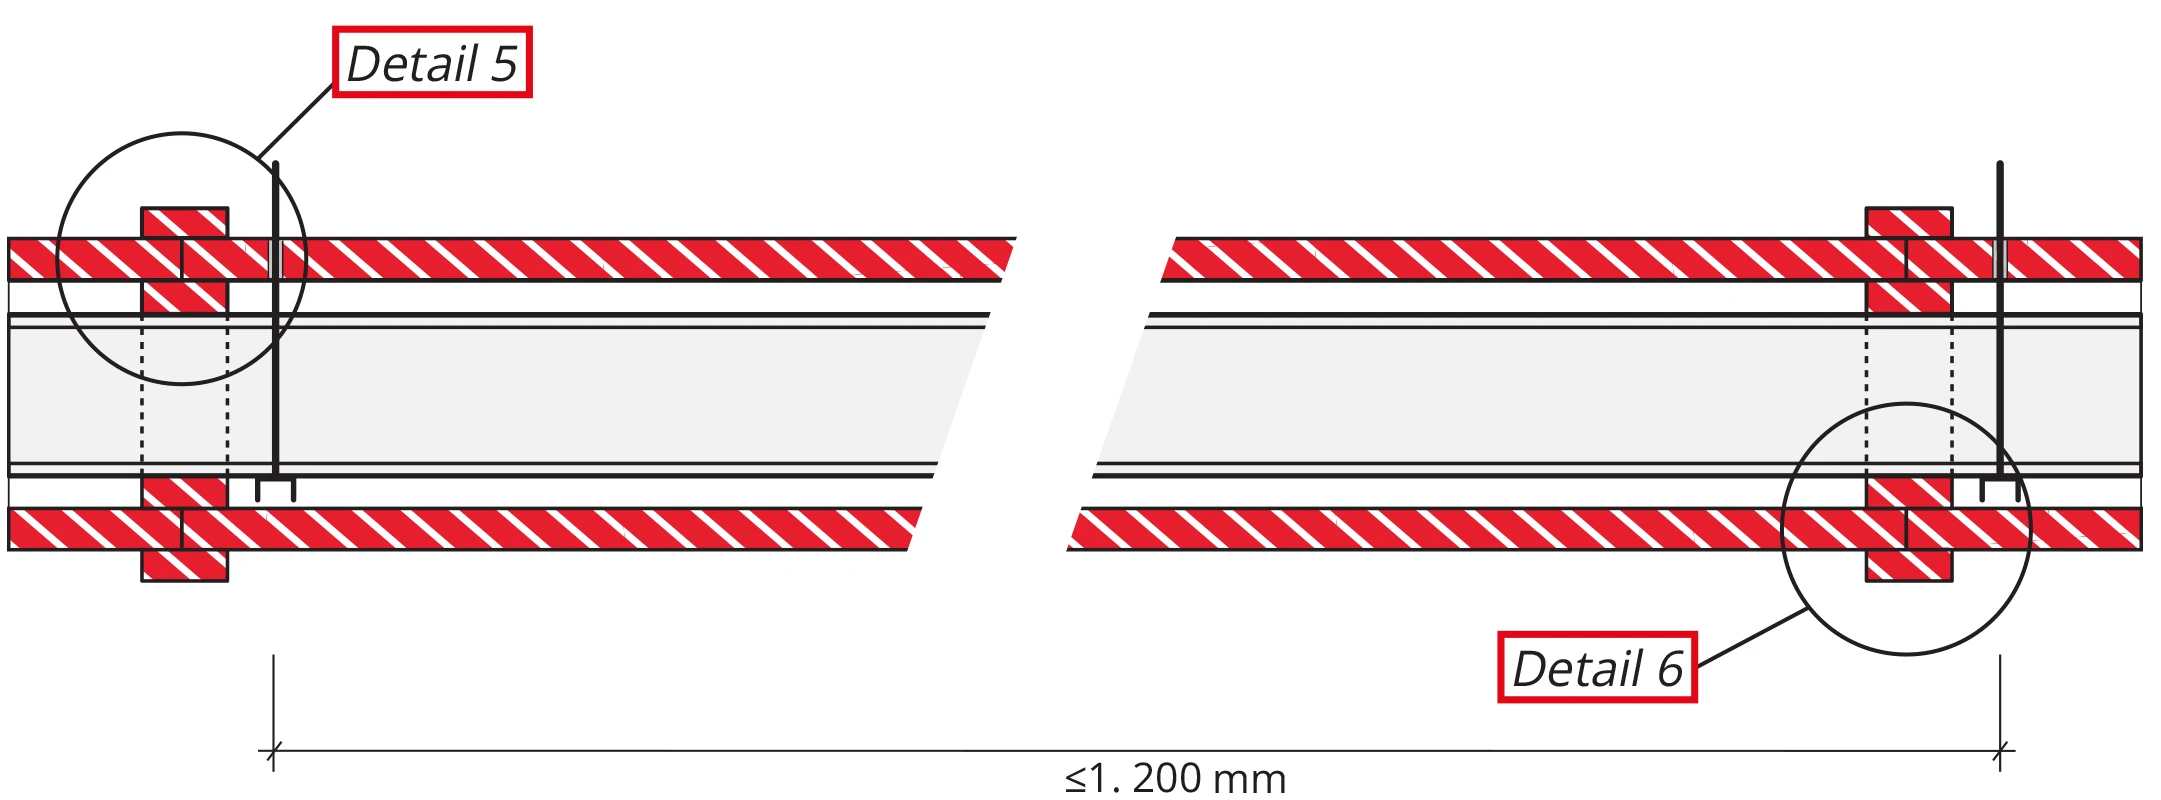 Detail 2 (Kanallängsschnitt) Die Formstücke können in Längen von ≤ 1200 mm hergestellt werden.